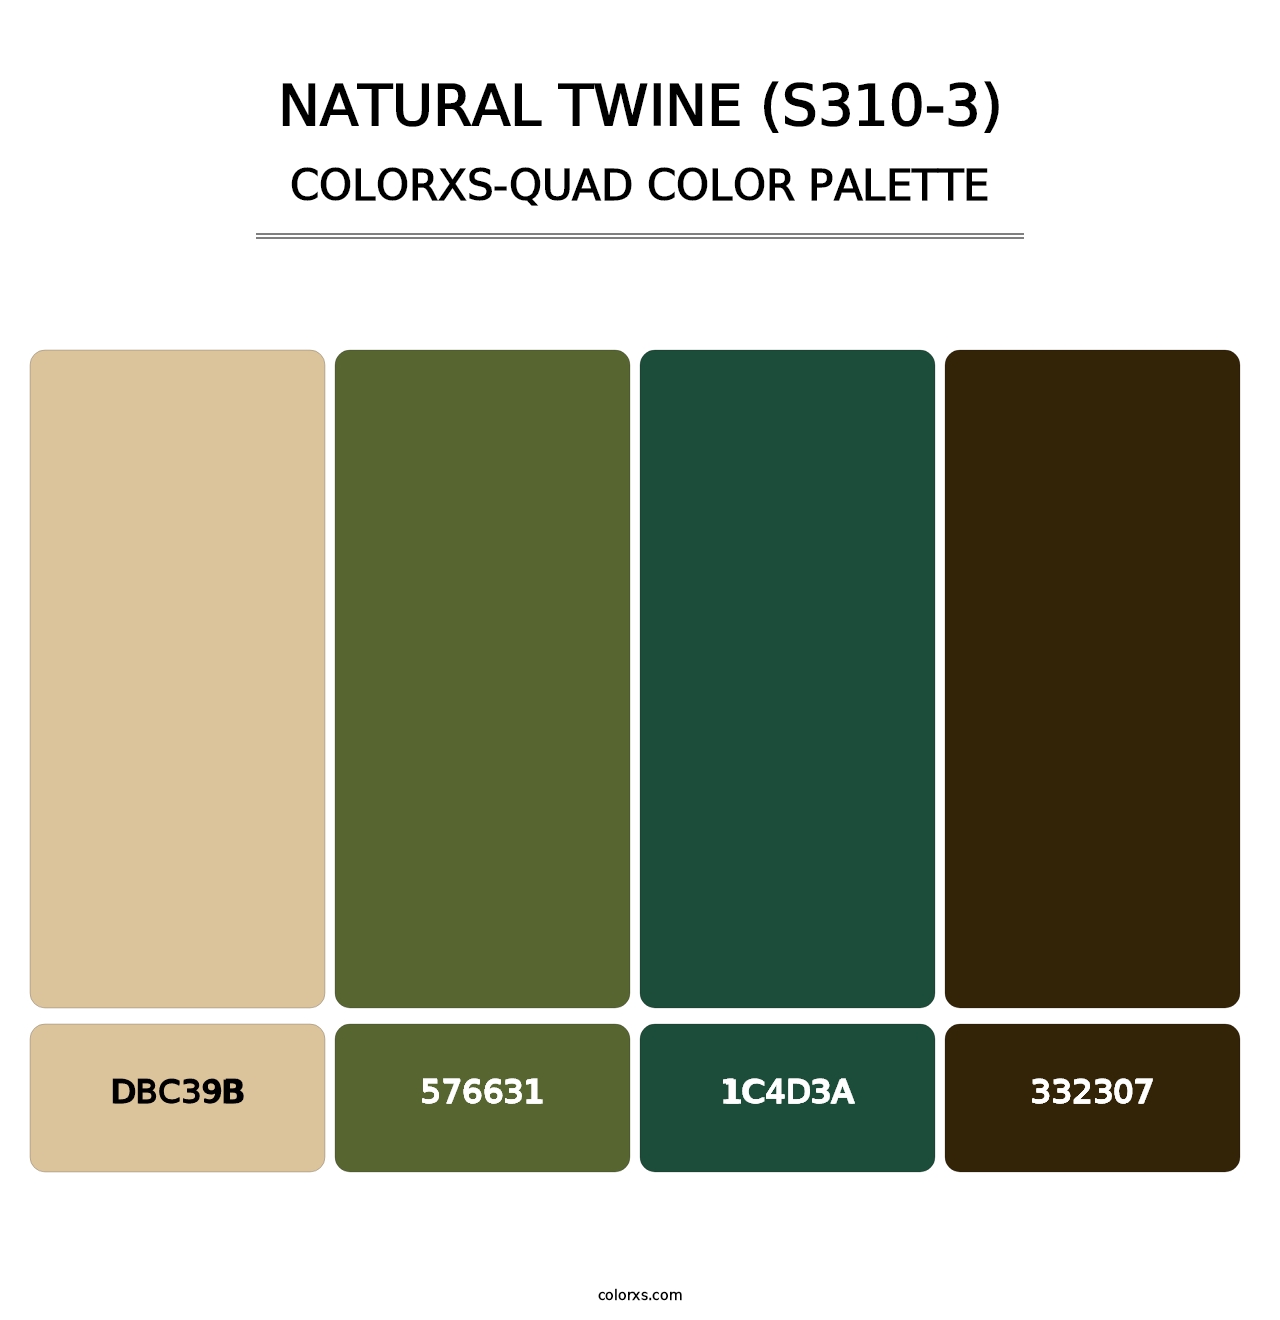 Natural Twine (S310-3) - Colorxs Quad Palette